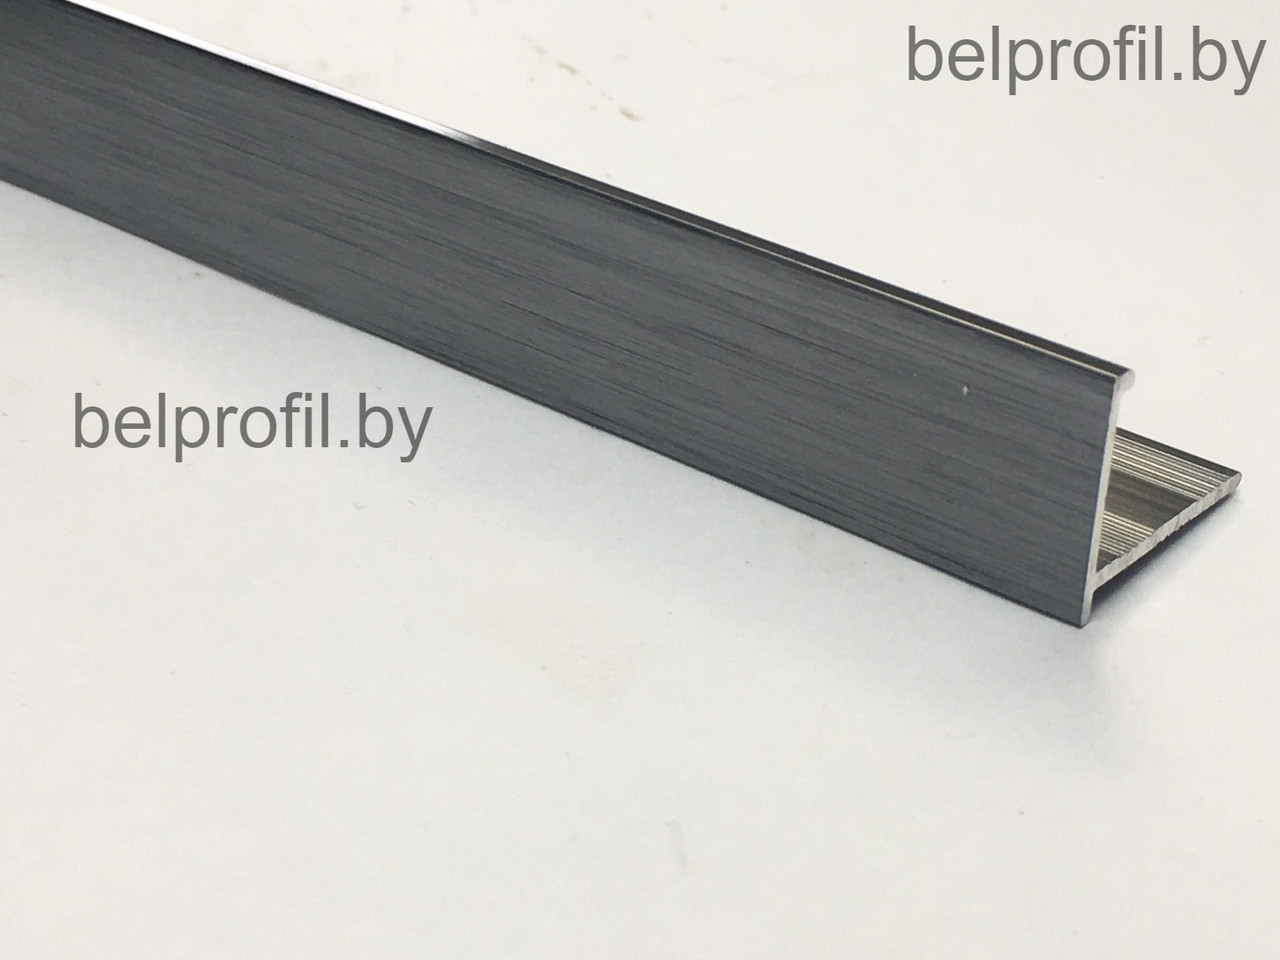 Уголок для плитки L-образный из алюминия с упором 10мм графит браш 270 см, фото 1